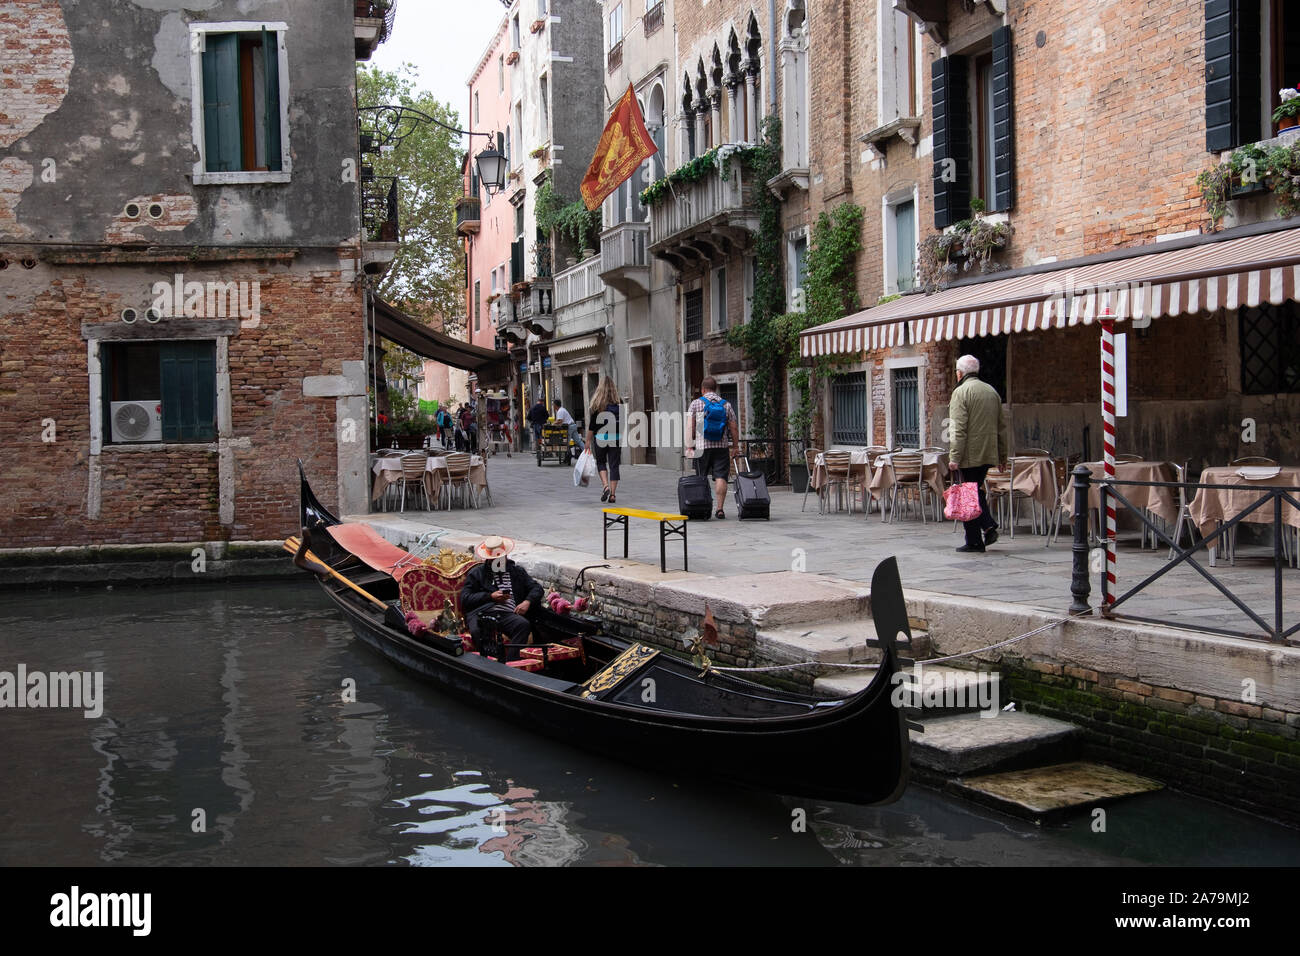 Gondole et gondolier amarré à côté d'étapes sur canal interne et de Venise, la lecture de son téléphone portable, en attente de son prochain billet, ignorés par les passants. Banque D'Images